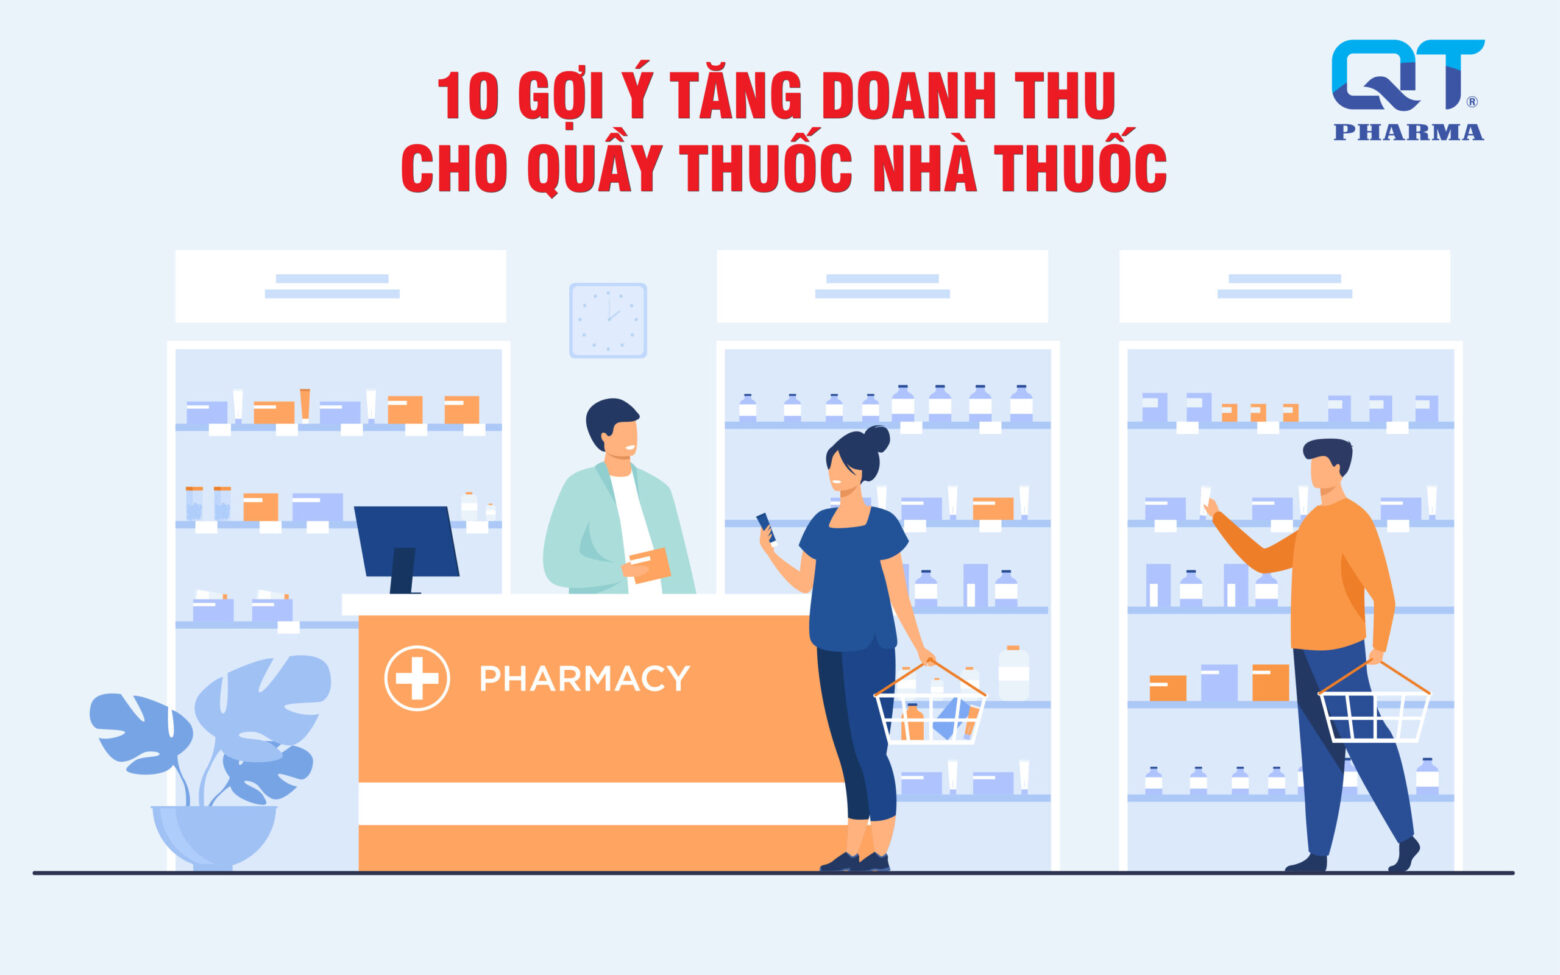 10 cách QT Pharma gợi ý để tăng doanh thu cho quầy thuốc nhà thuốc